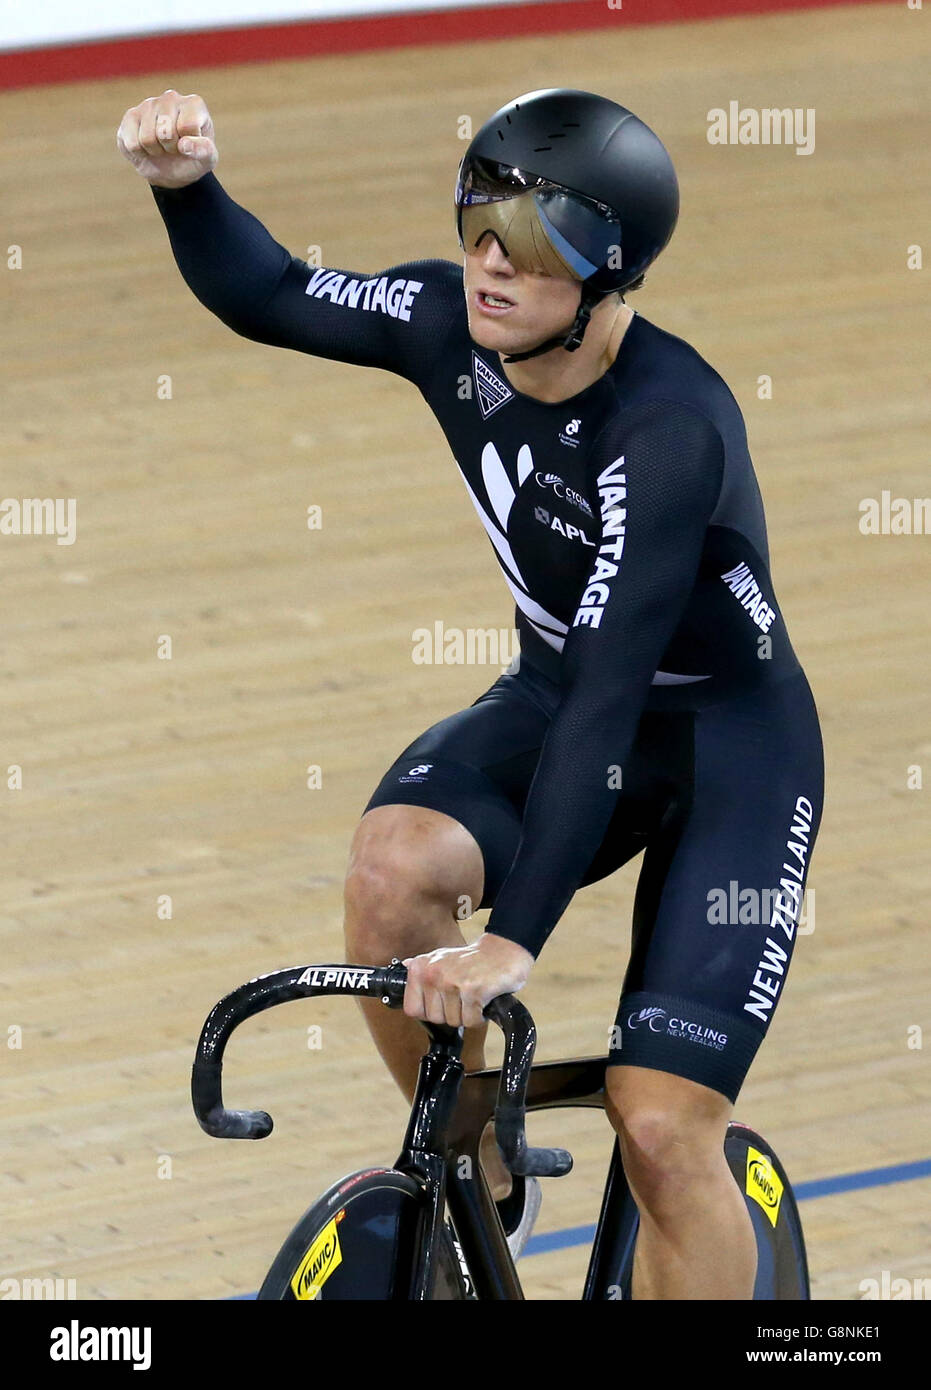 Ethan Mitchell, de Nouvelle-Zélande, célèbre après avoir remporté la finale du printemps de l'équipe masculine lors du premier jour des championnats du monde de cyclisme sur piste de l'UCI à Lee Valley Volopark, Londres. Banque D'Images